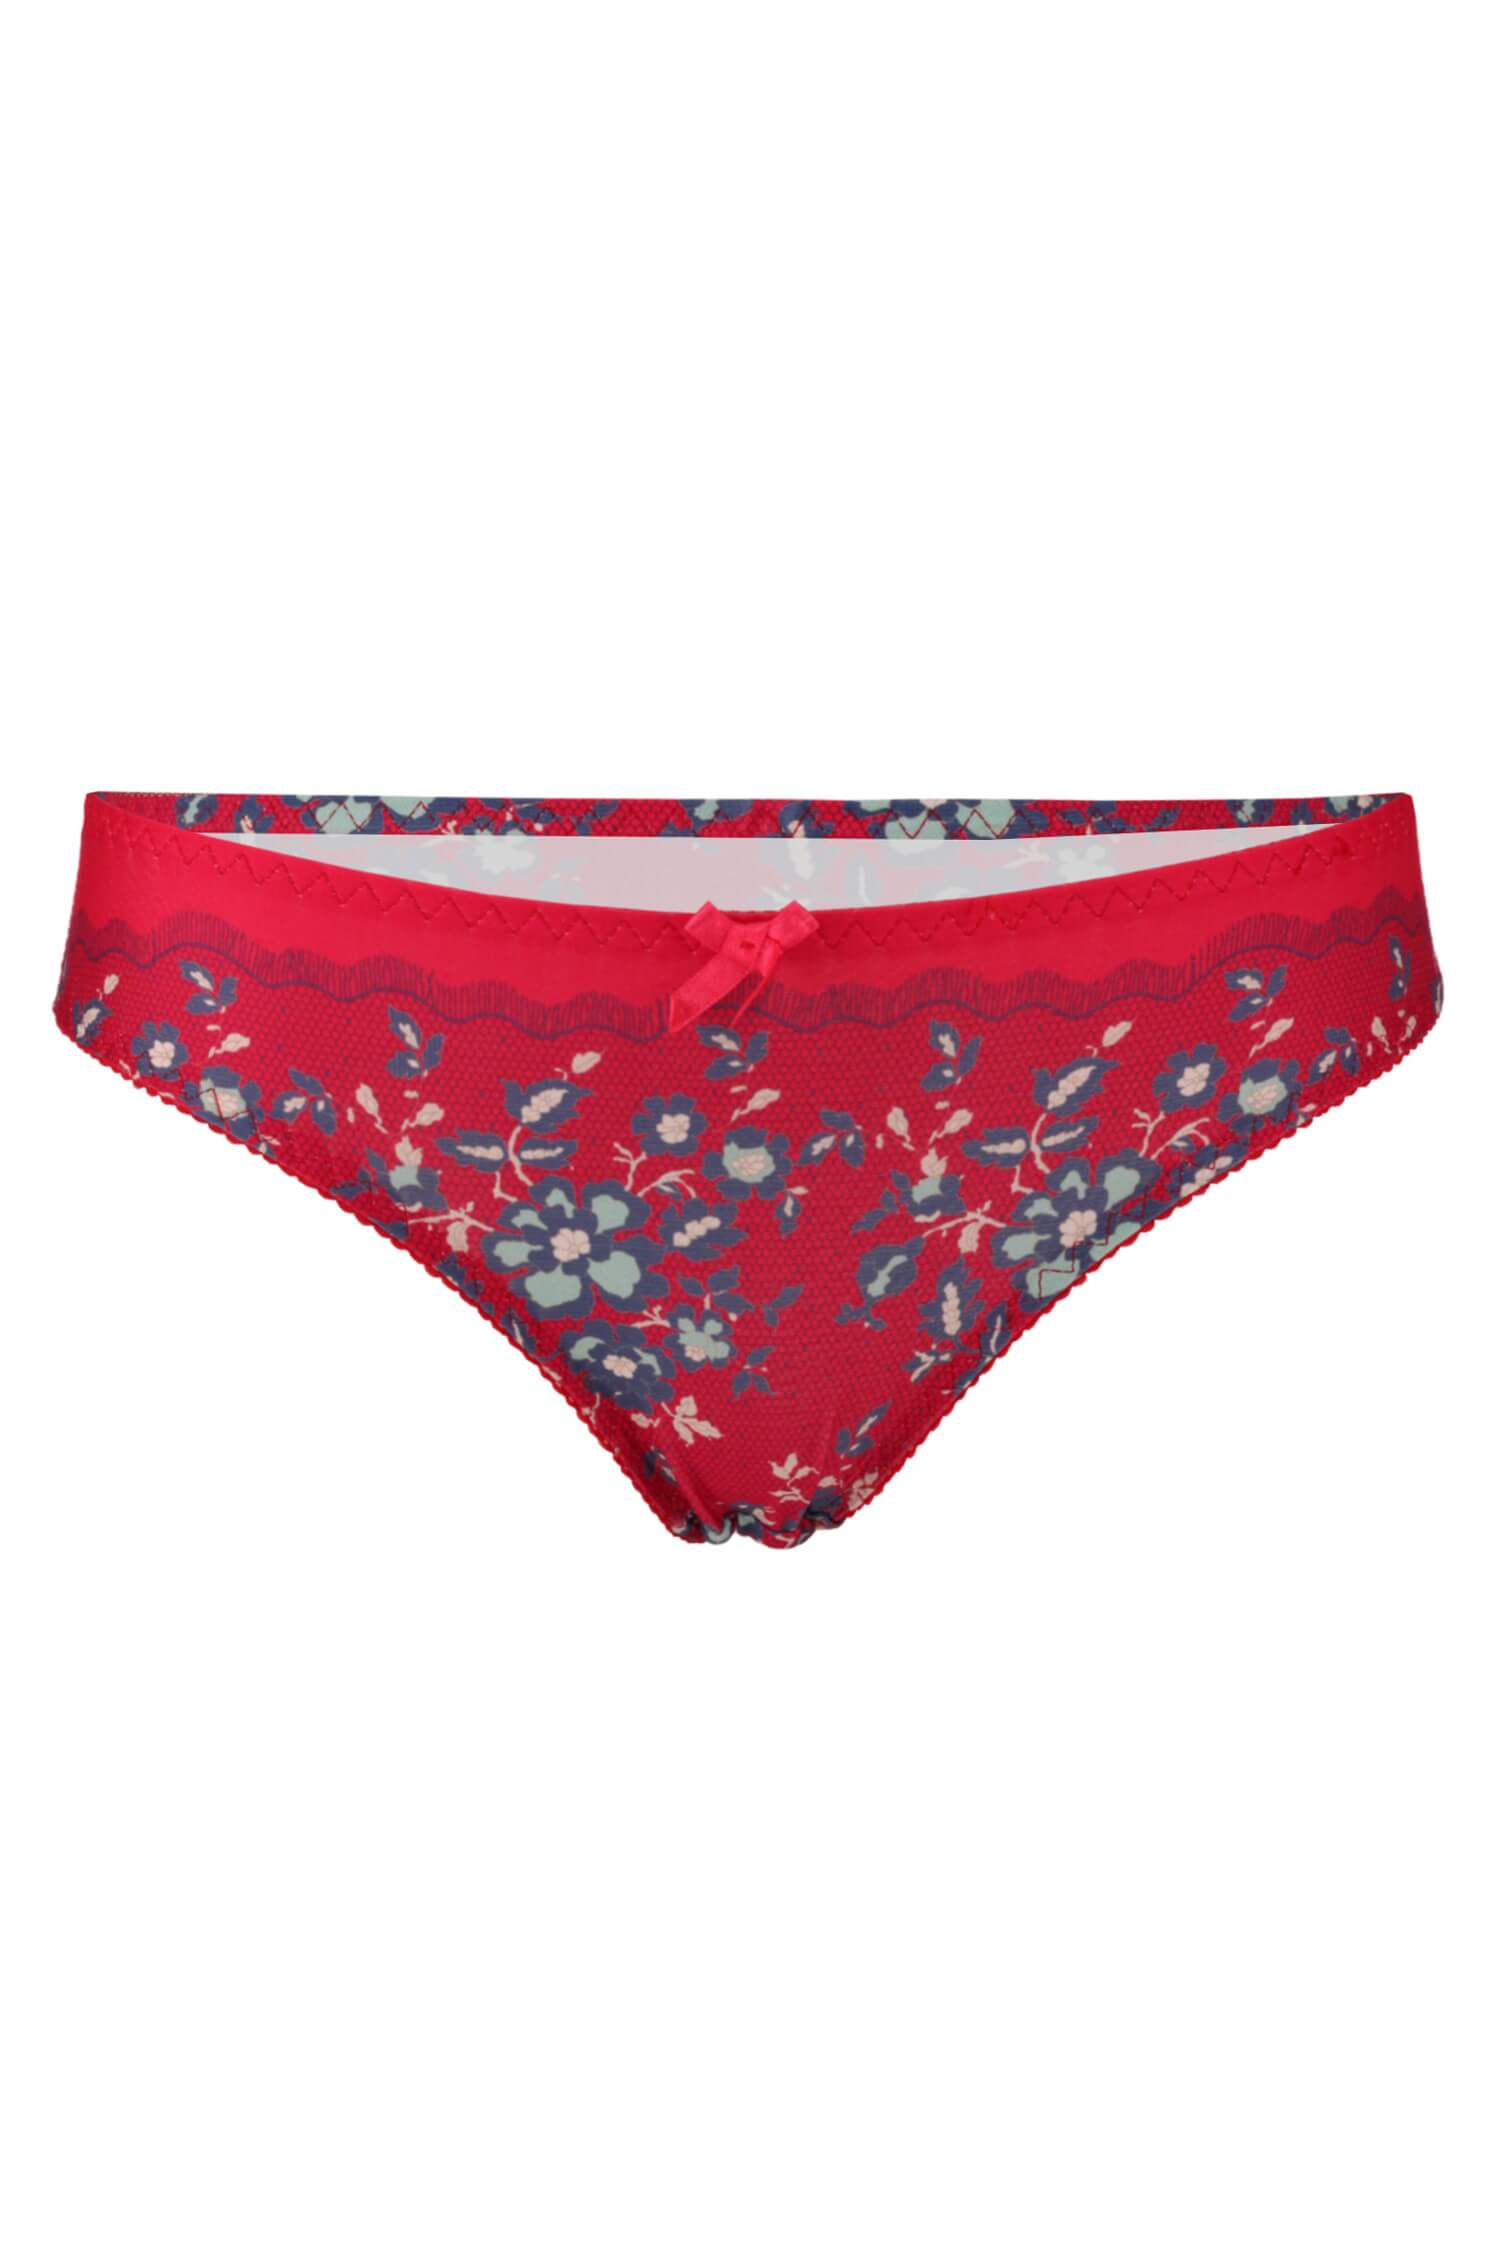 Květa dámské kalhotky s květinovým designem 2279 červená L